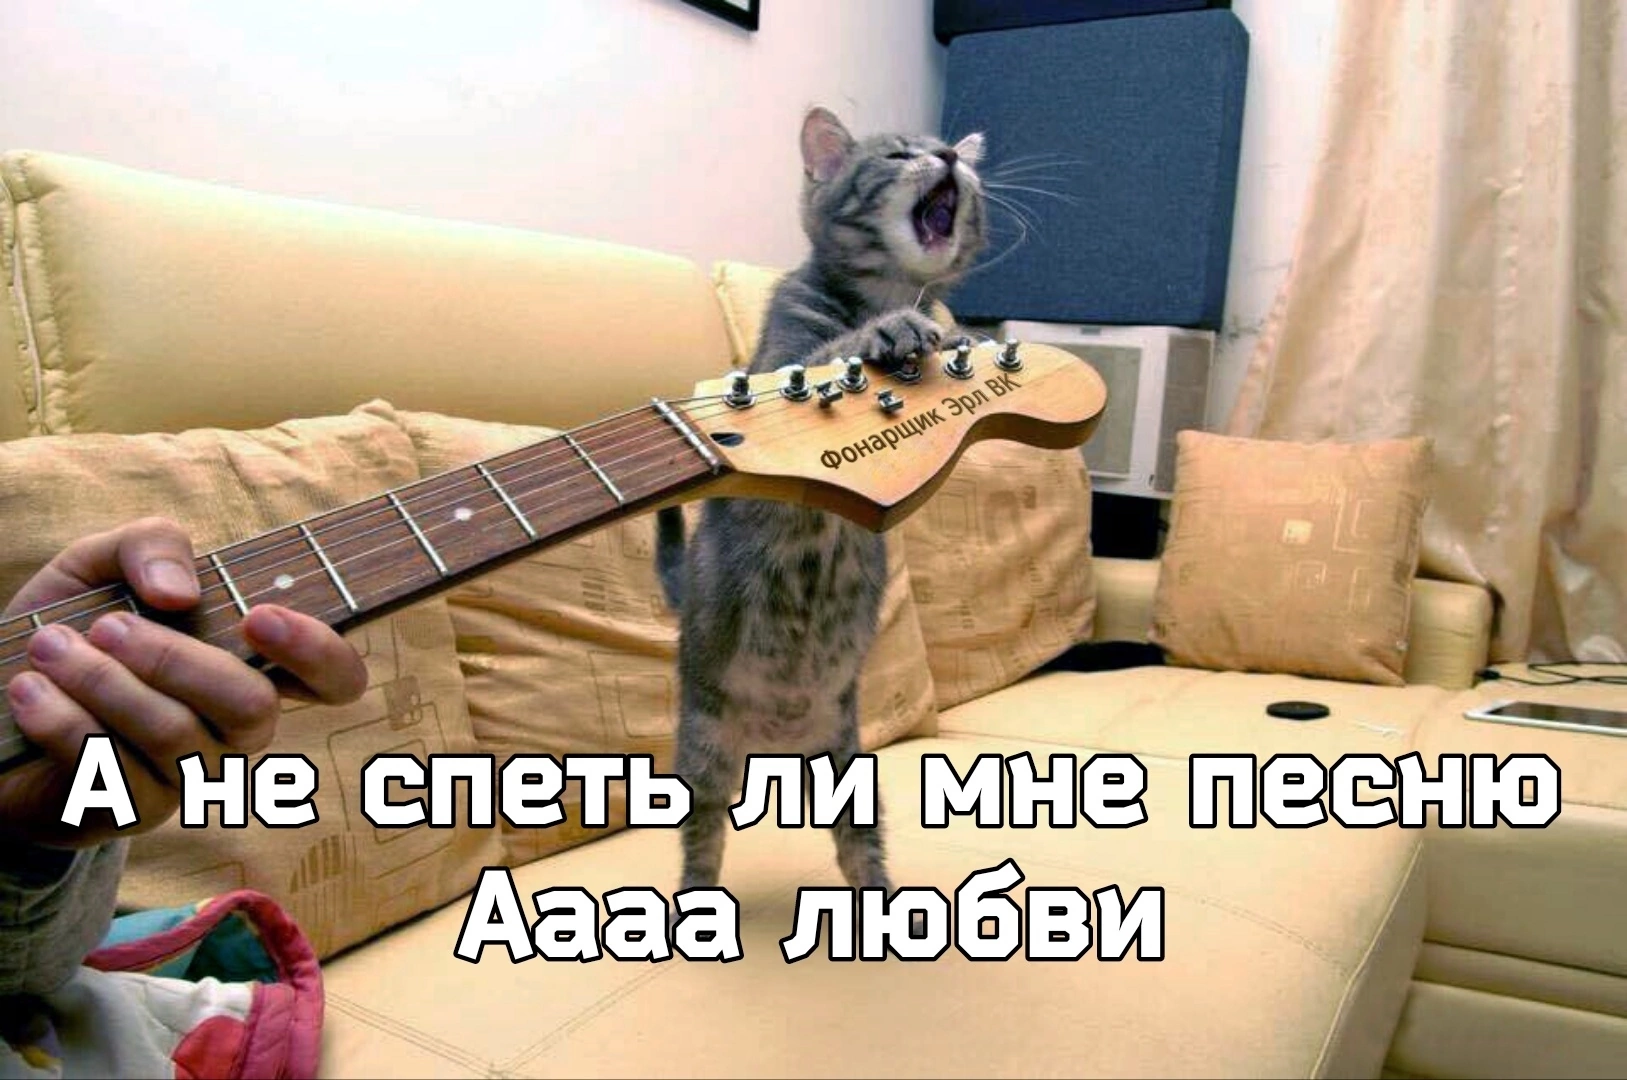 Следующая спеть. Котик с гитарой картинки. Смешные коты с гитарами. А не спеть ли мне. Кот хит.